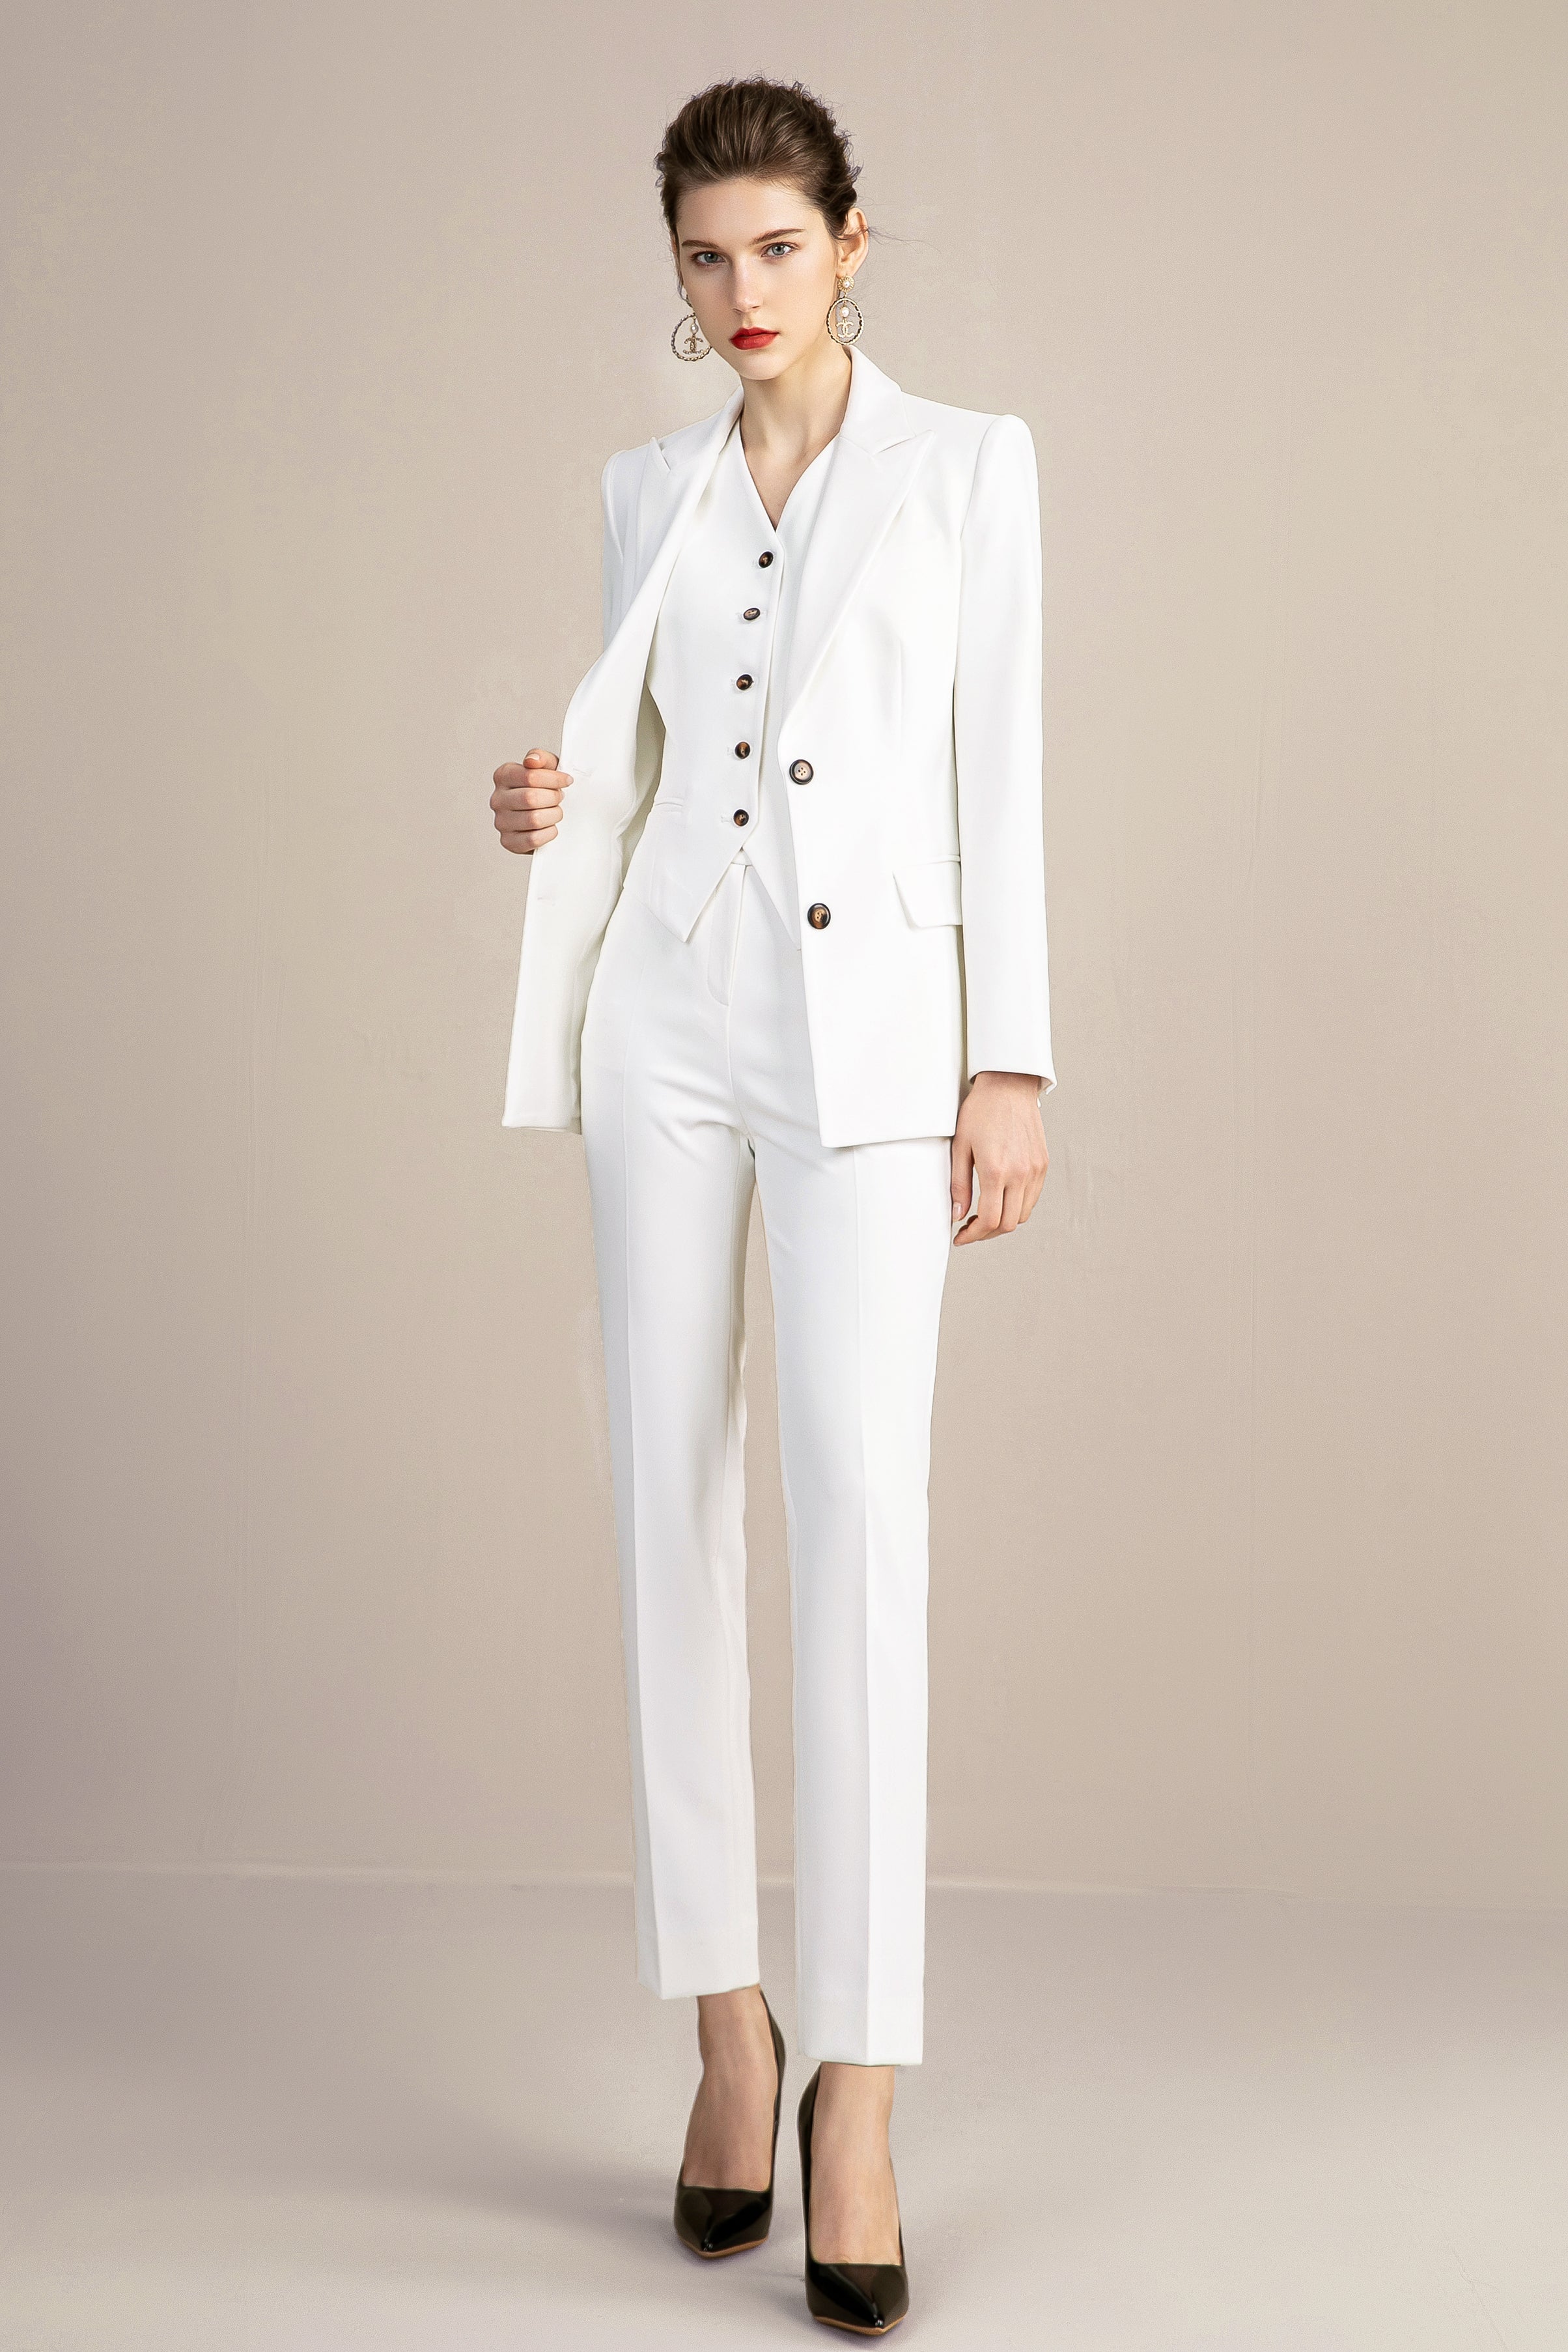 Blazer for Womens Cardigan & Suit Pant Business Casual Set Fashion Solid  Plus Size Office Suit Coat Pants 2PC Outfit - Walmart.com